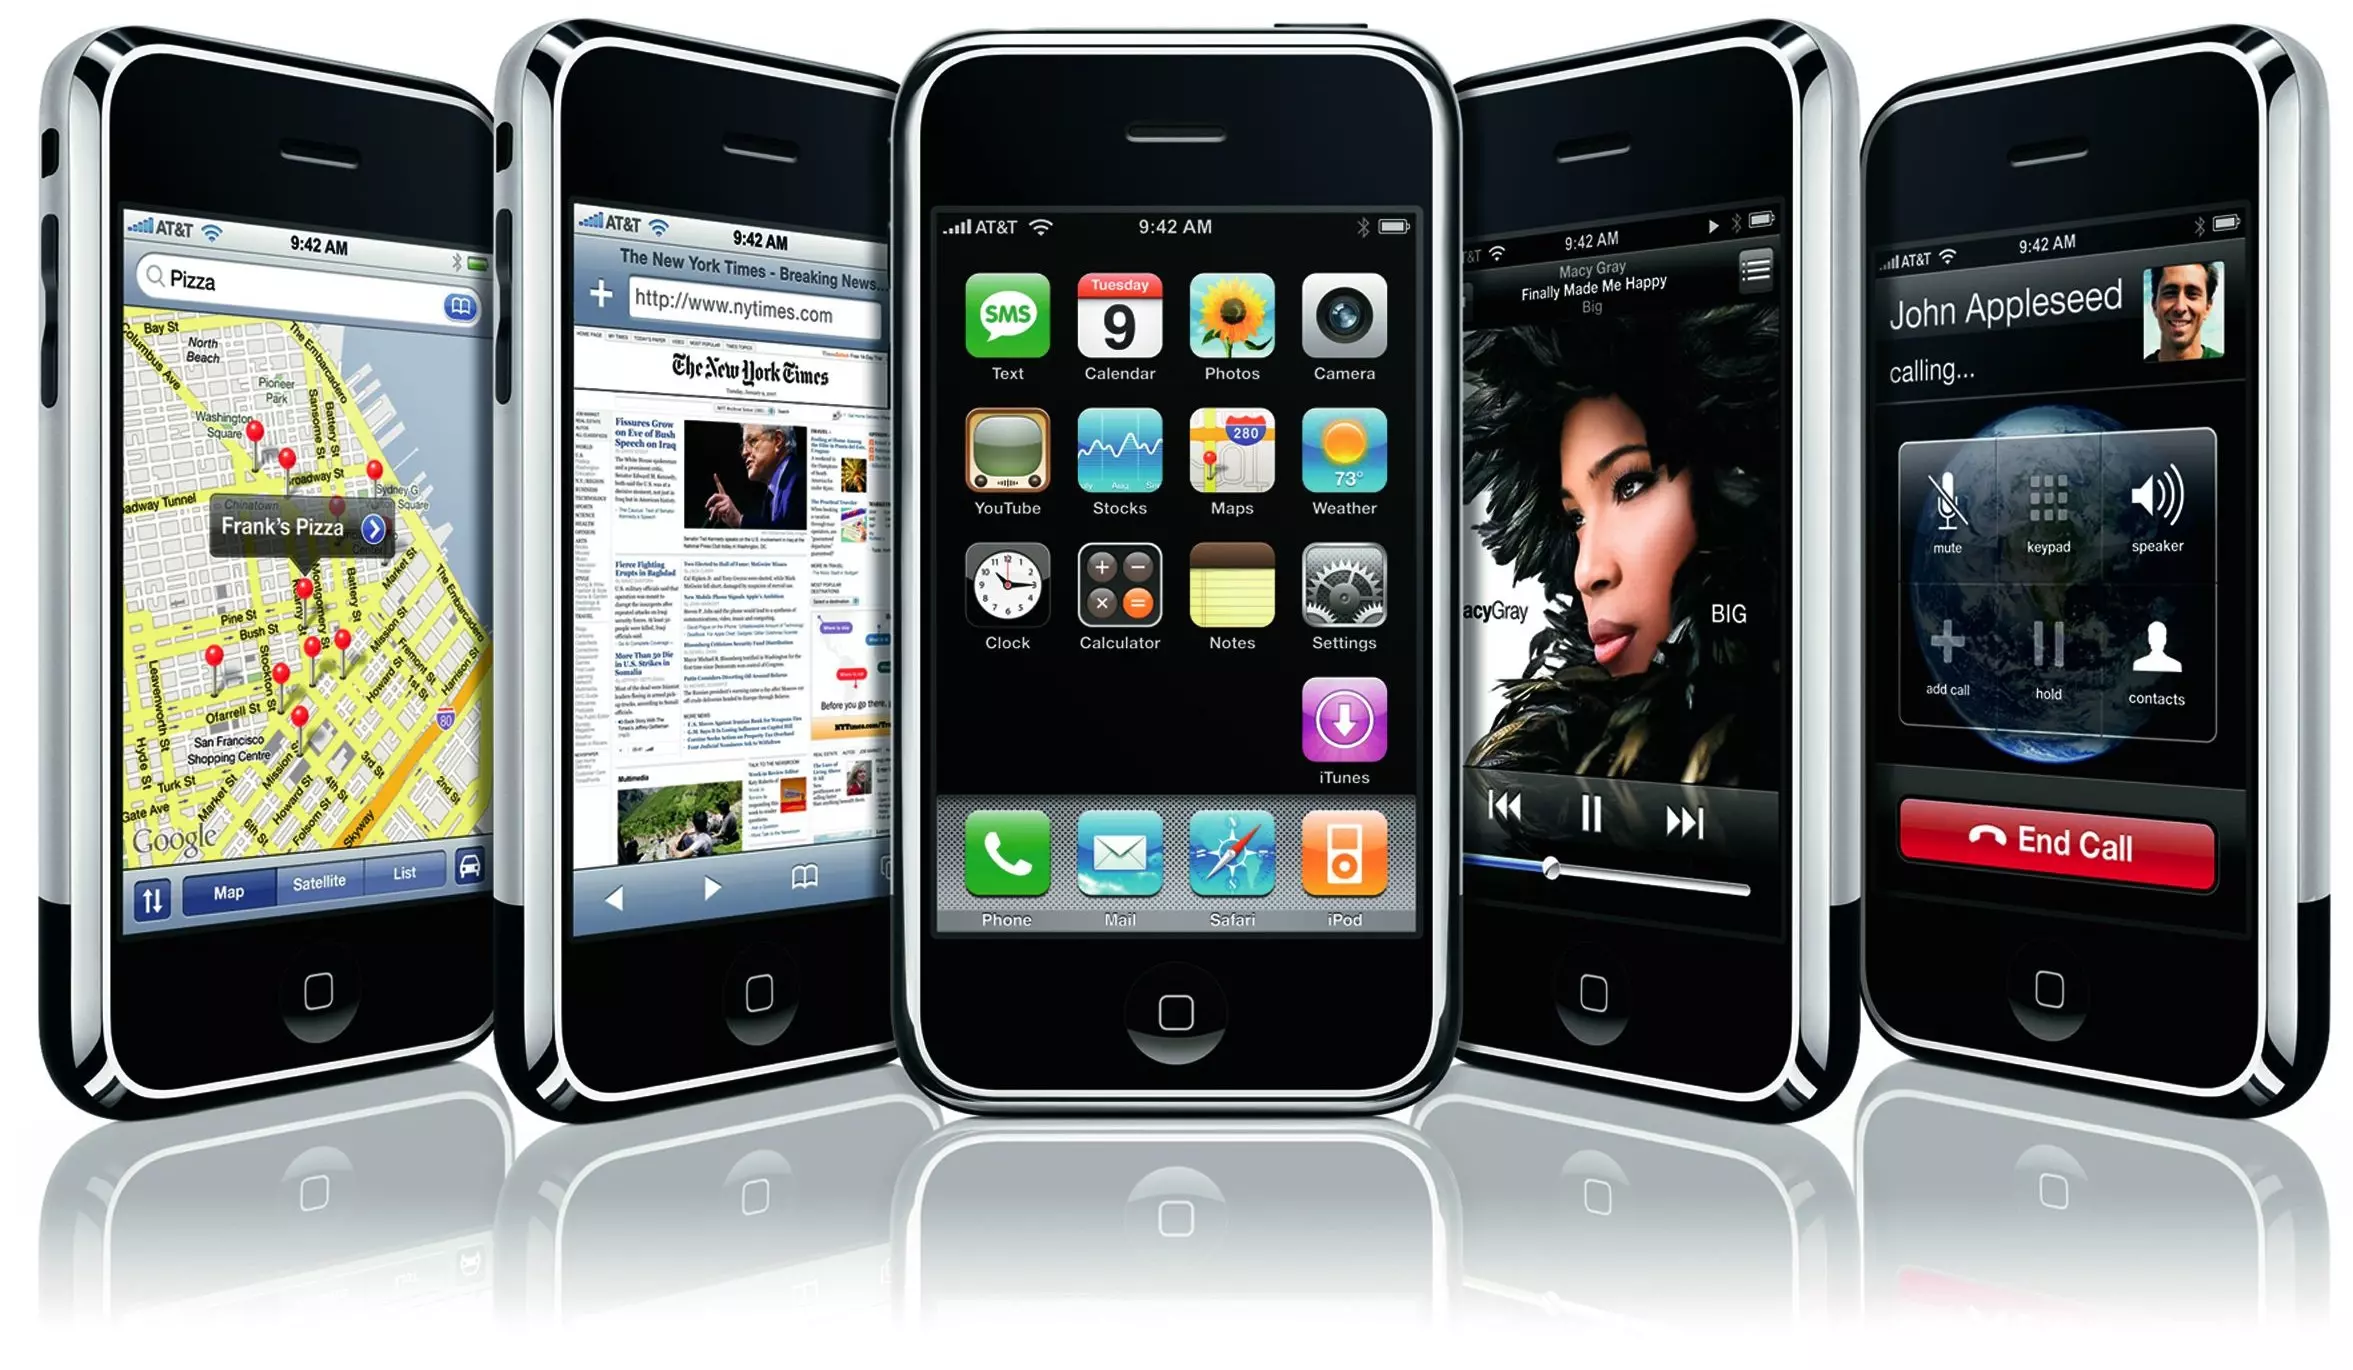 Apple habría cancelado el lanzamiento del iPhone SE 4